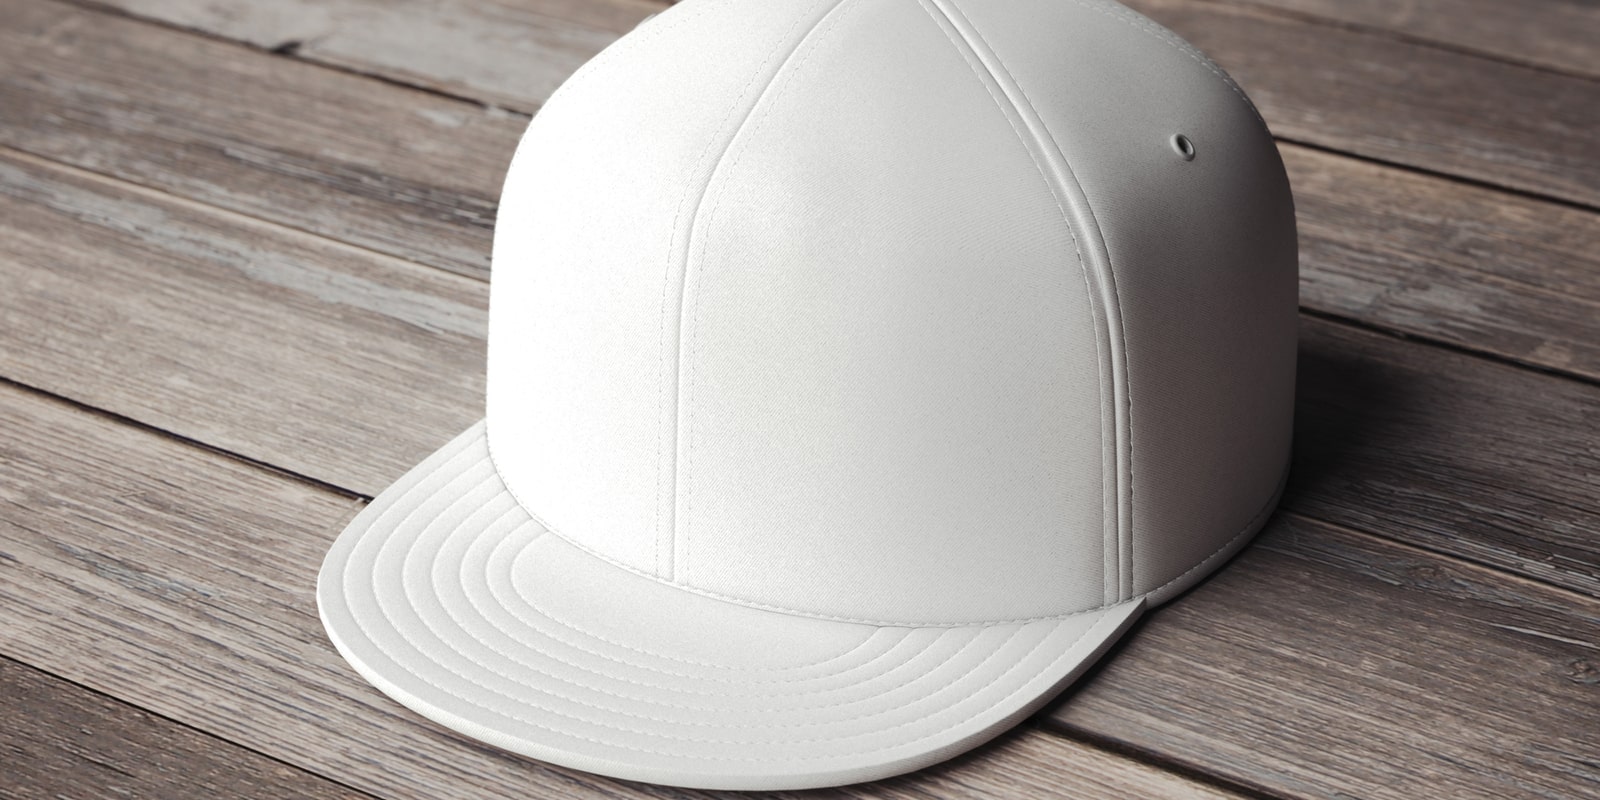 オリジナル帽子・キャップ製作・OEM生産 | ユニファースト株式会社